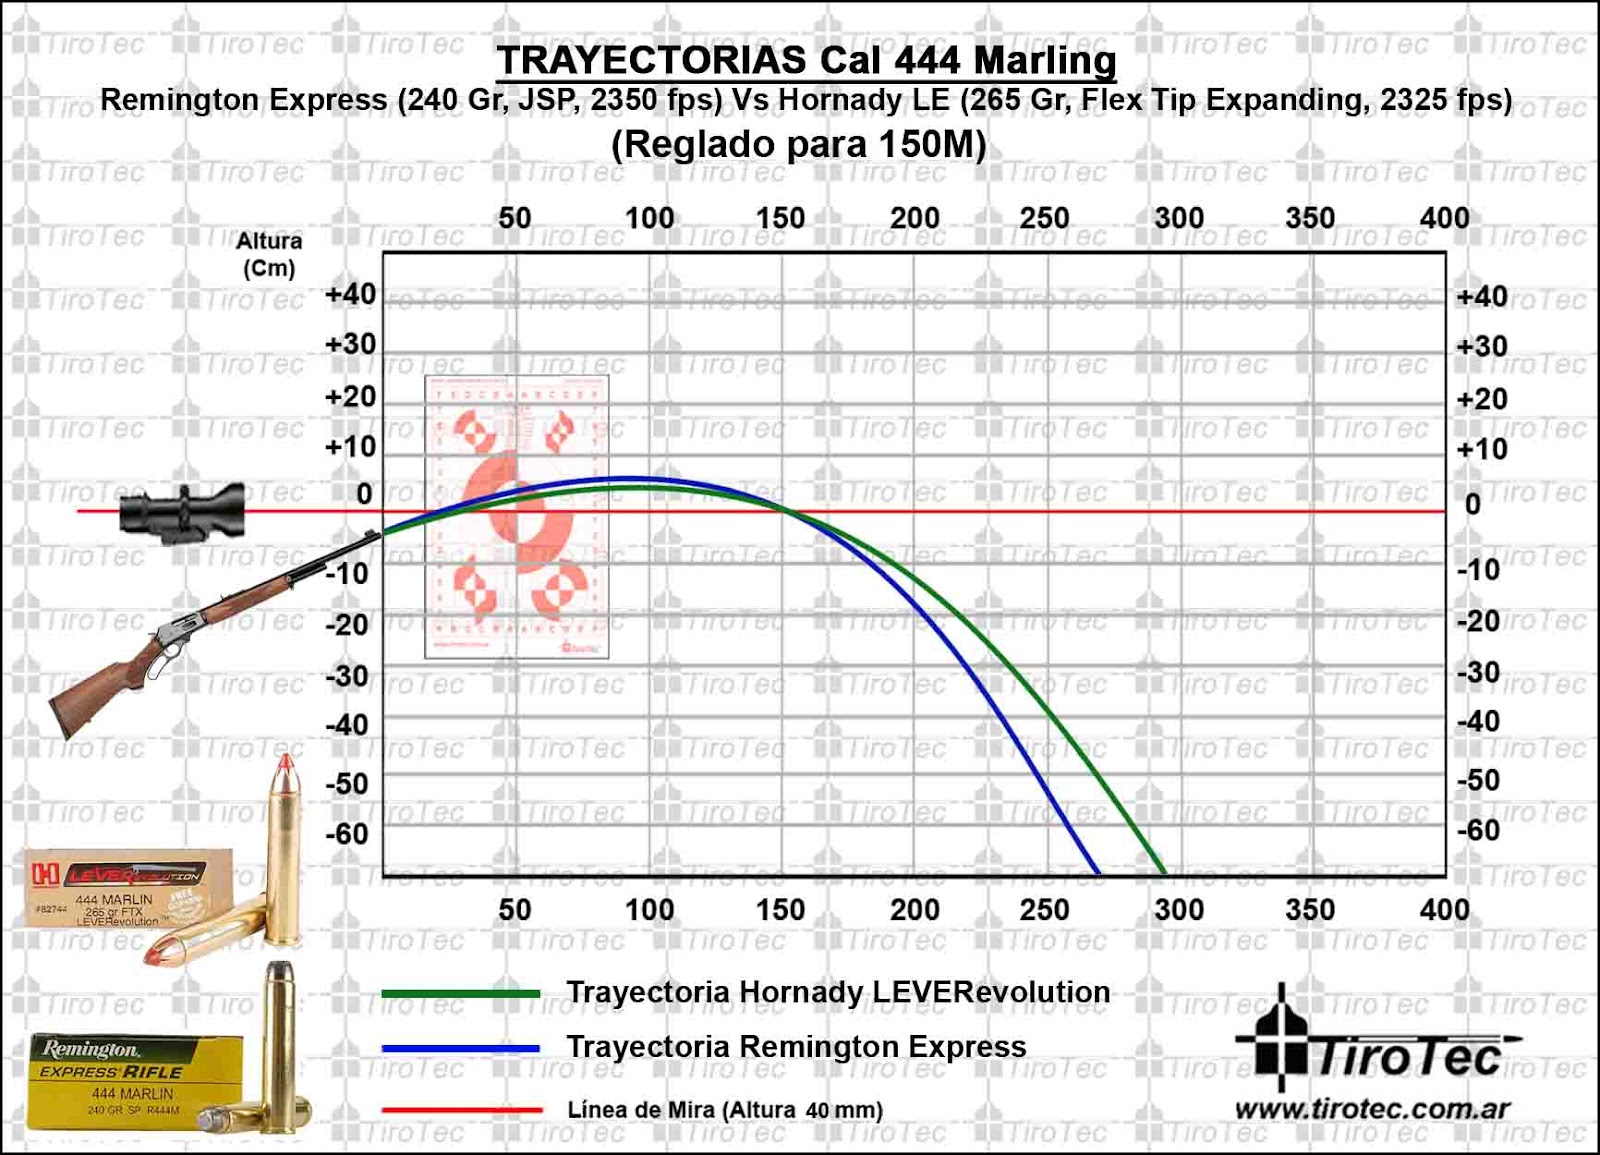 hornady leverevolution 30 30 ballistics chart - Focus